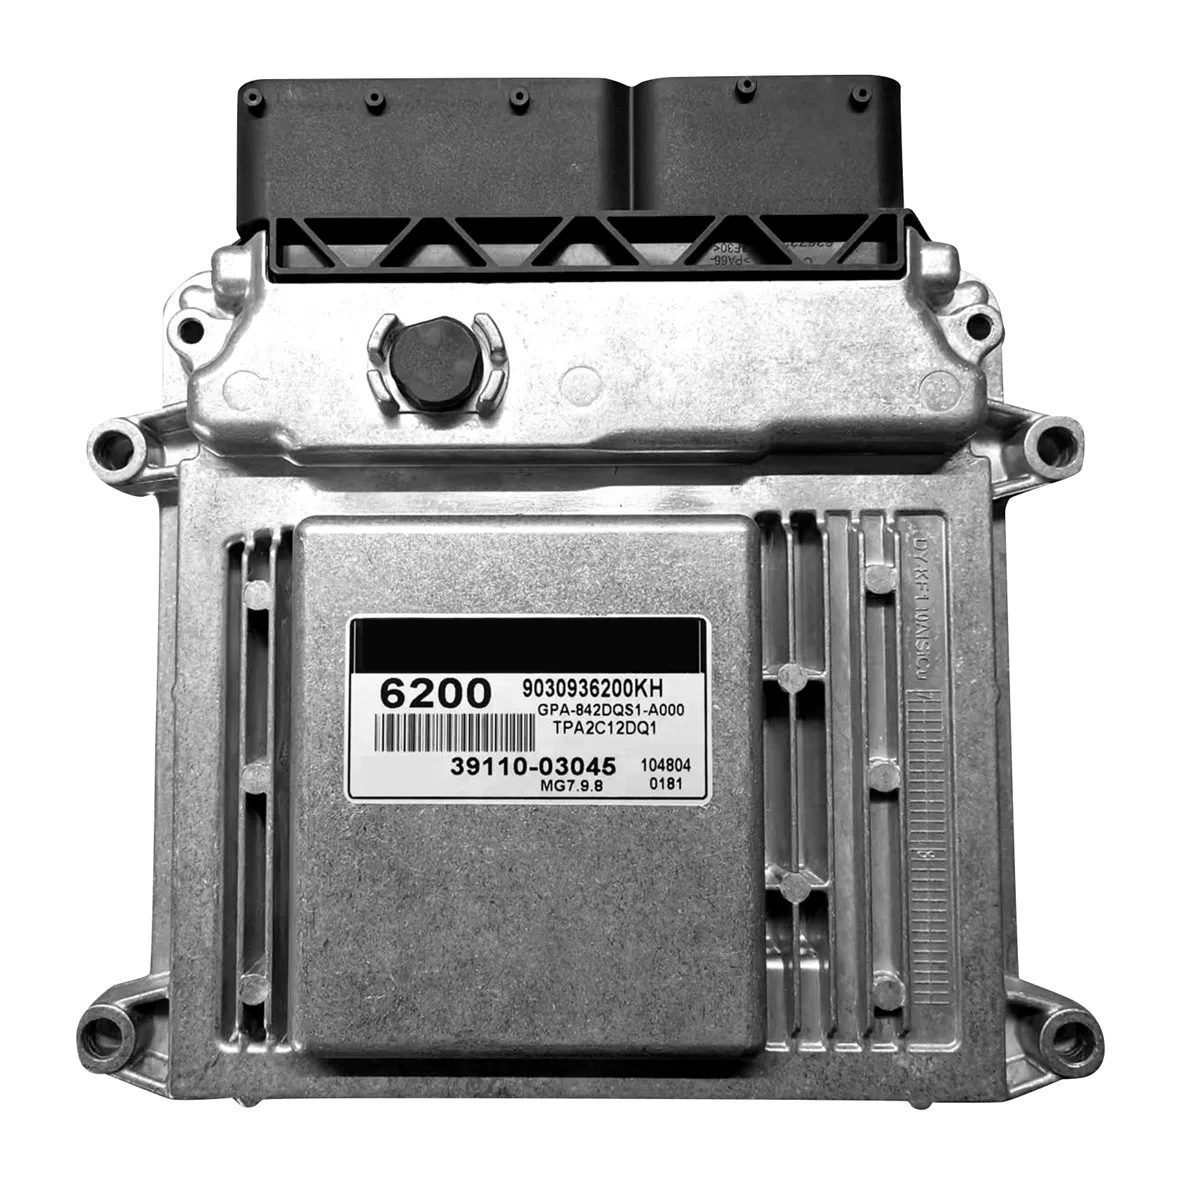 

Новая компьютерная плата двигателя 39110-03045 MG7.9.8, модуль контроллера ЭБУ для электронного блока управления 3911003045